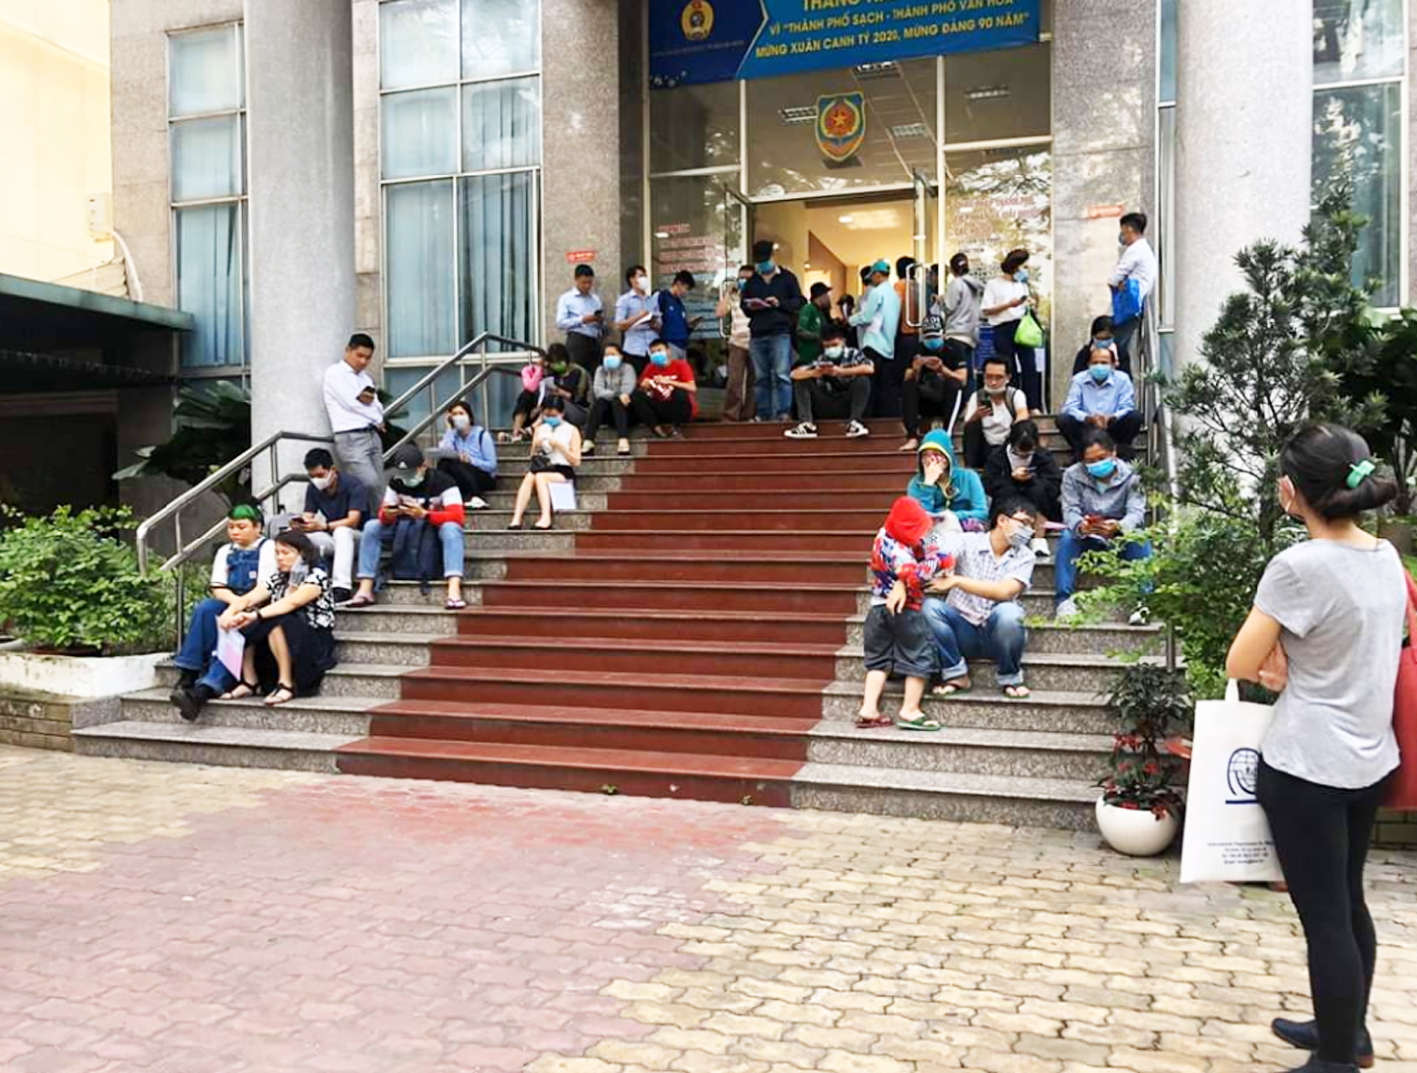 Người dân ngồi tràn bậc cầu thang cổng chính Sở Tư pháp TP.HCM chờ làm thủ tục